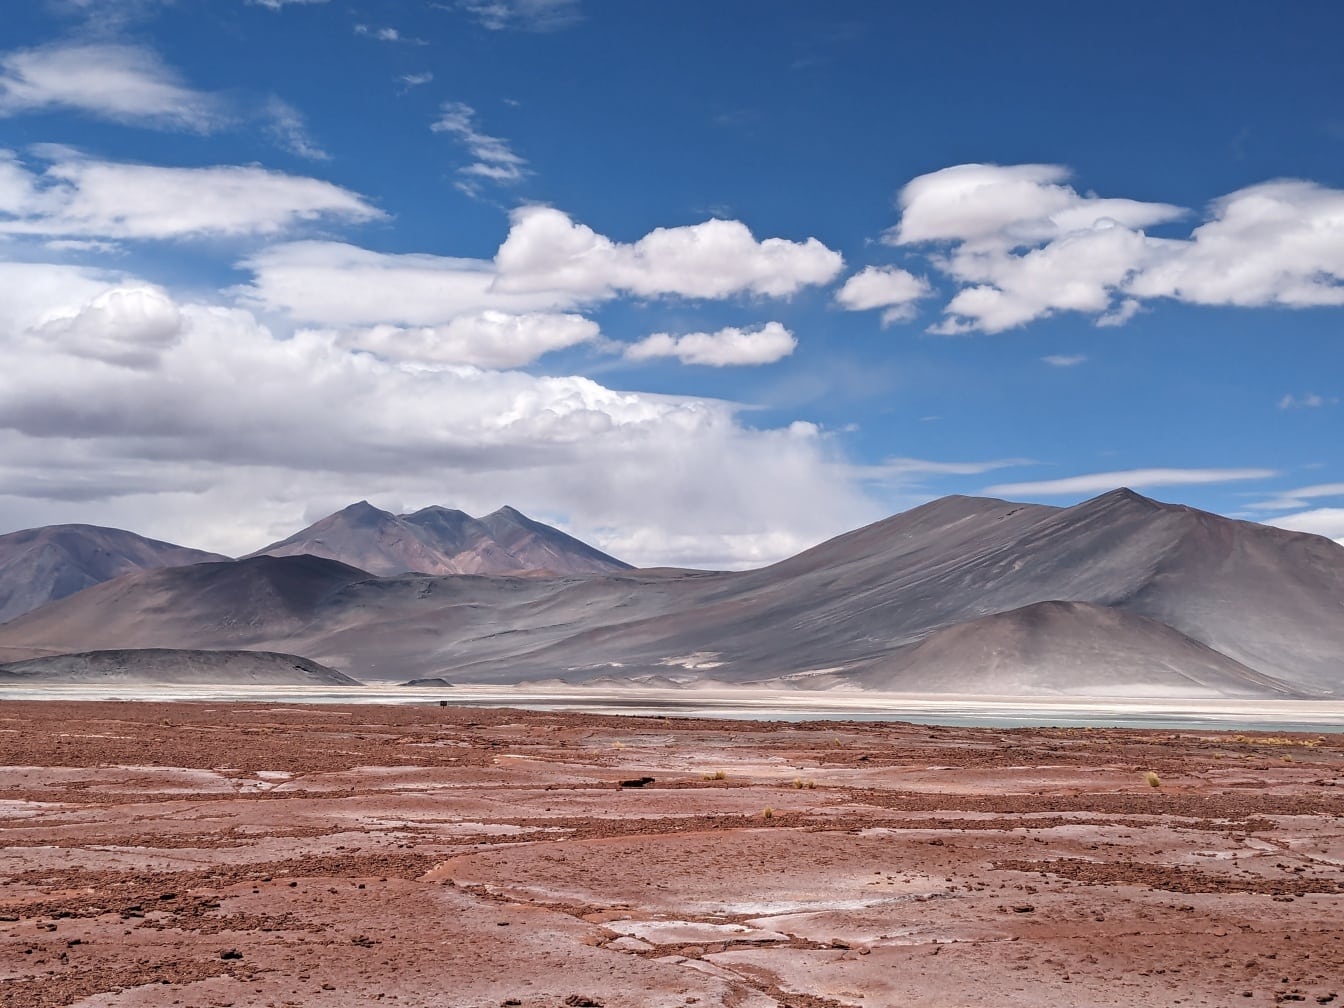 Landschaft eines Salar de Talar, einer Salzplatte in den chilenischen Anden mit Bergen in der Ferne